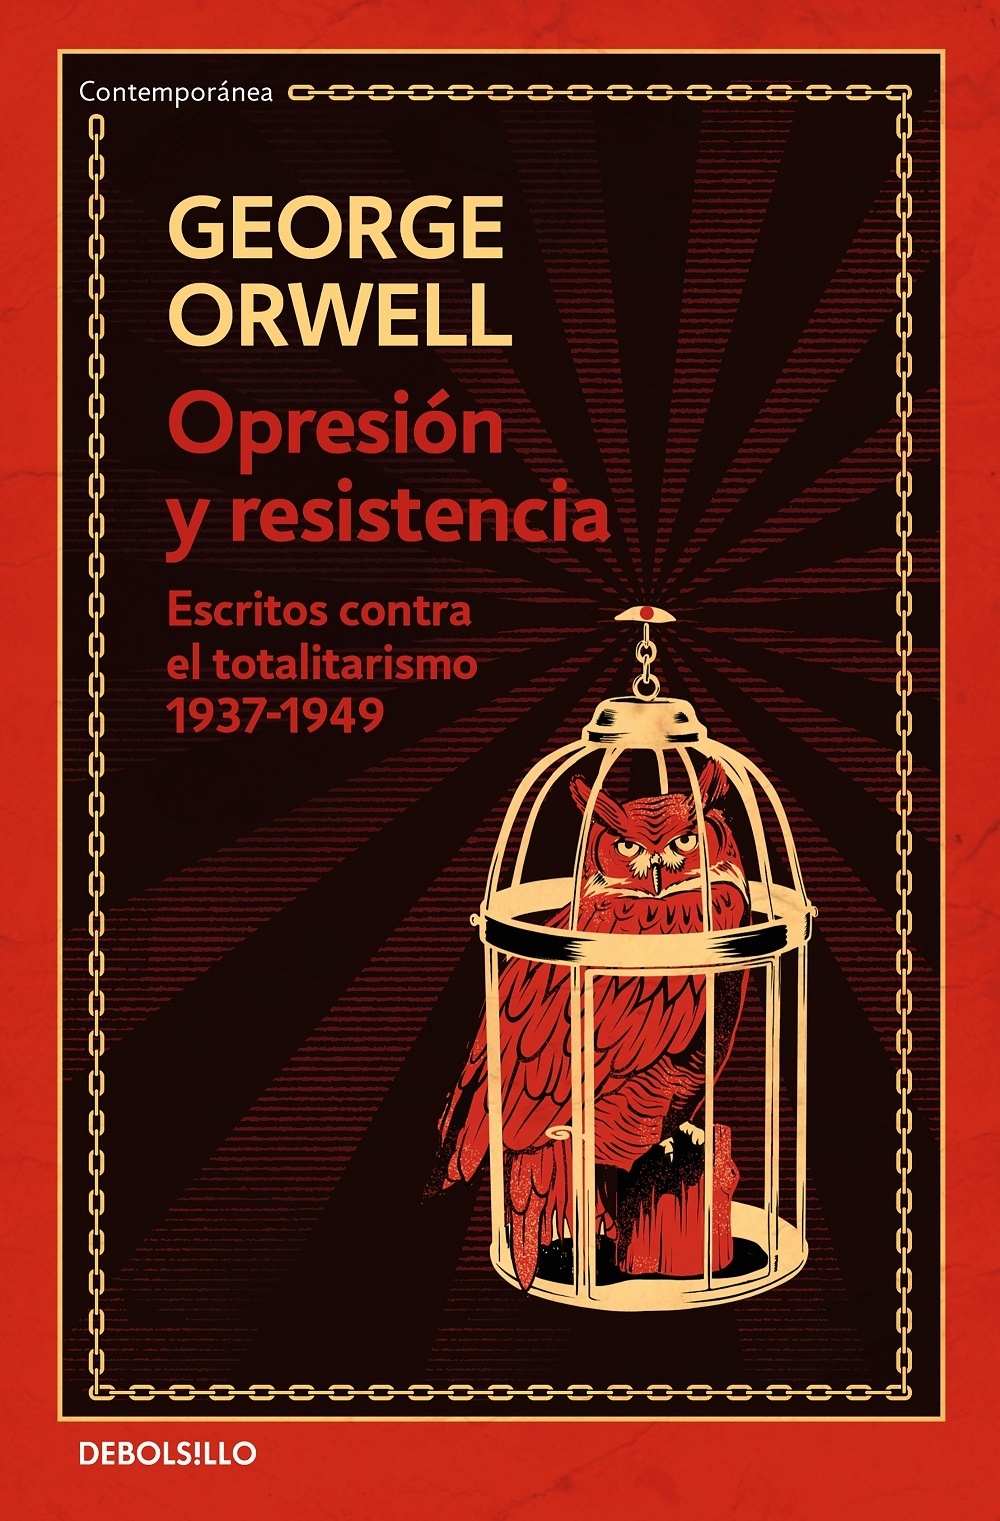 Opresión y resistencia "Escritos contra el totalitarismo 1937-1949"